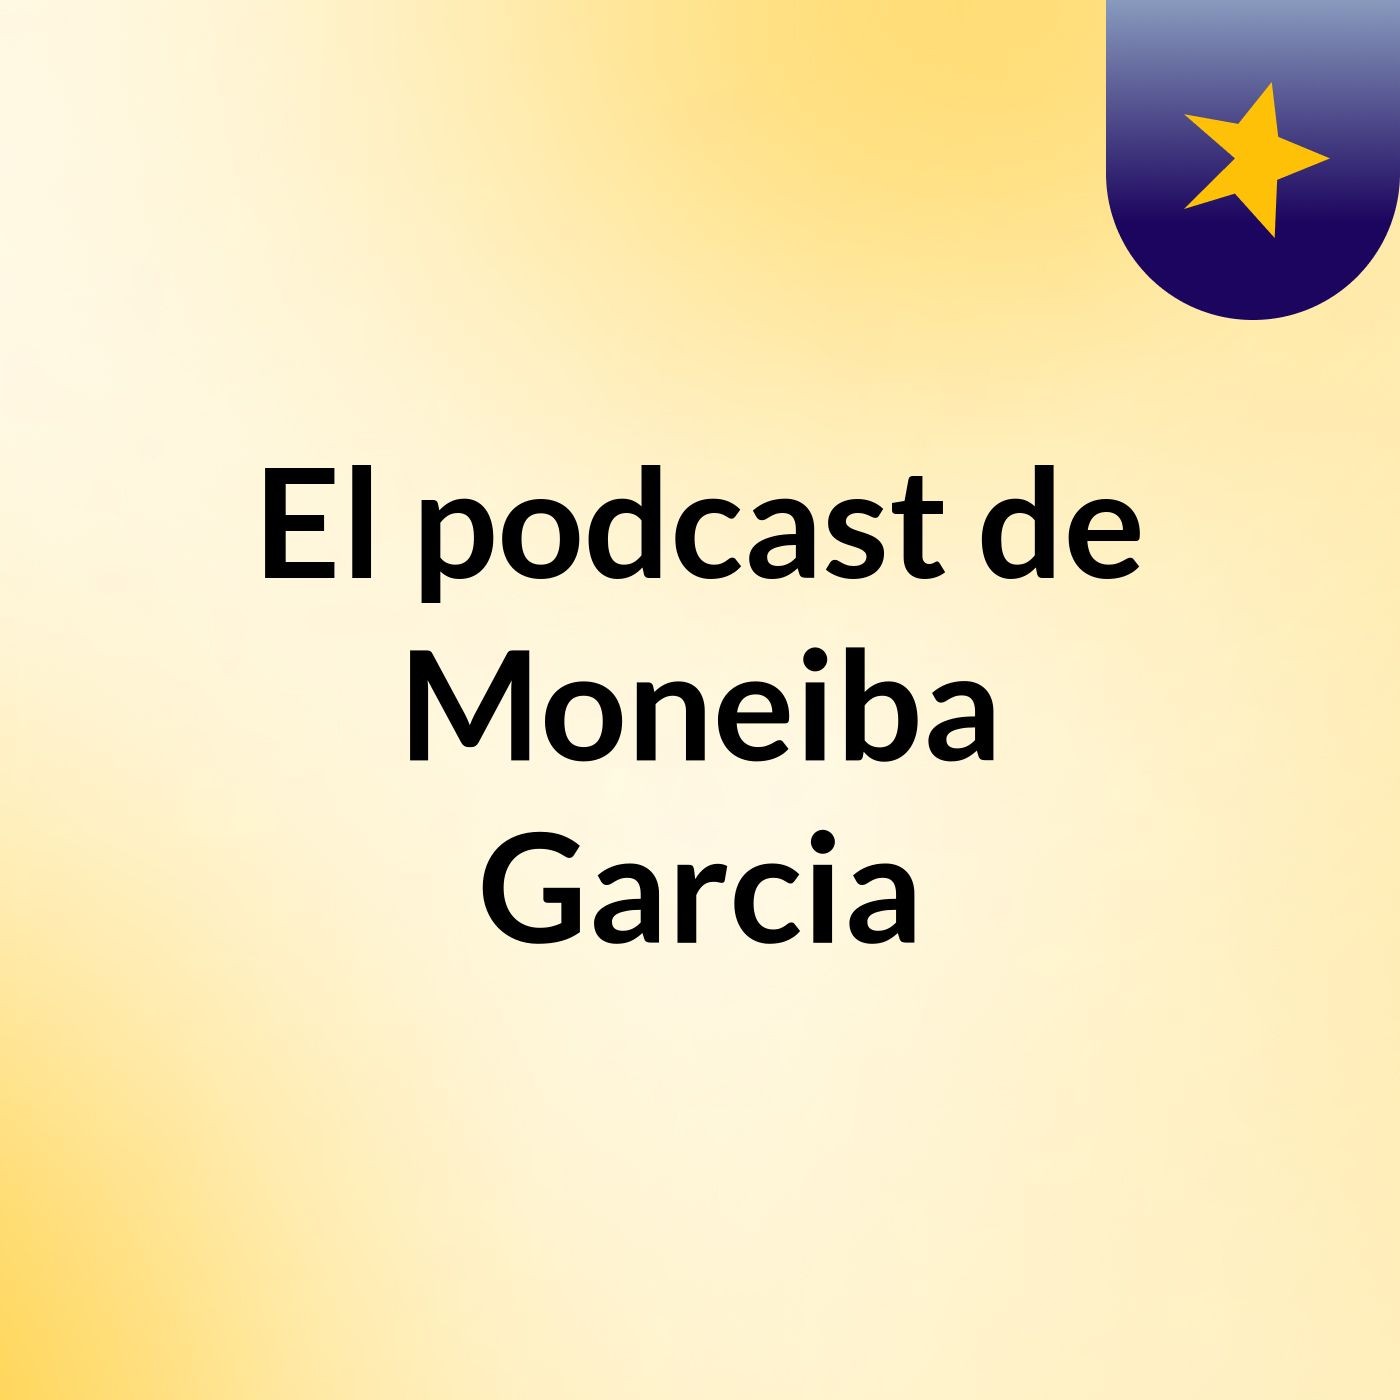 El podcast de Moneiba Garcia